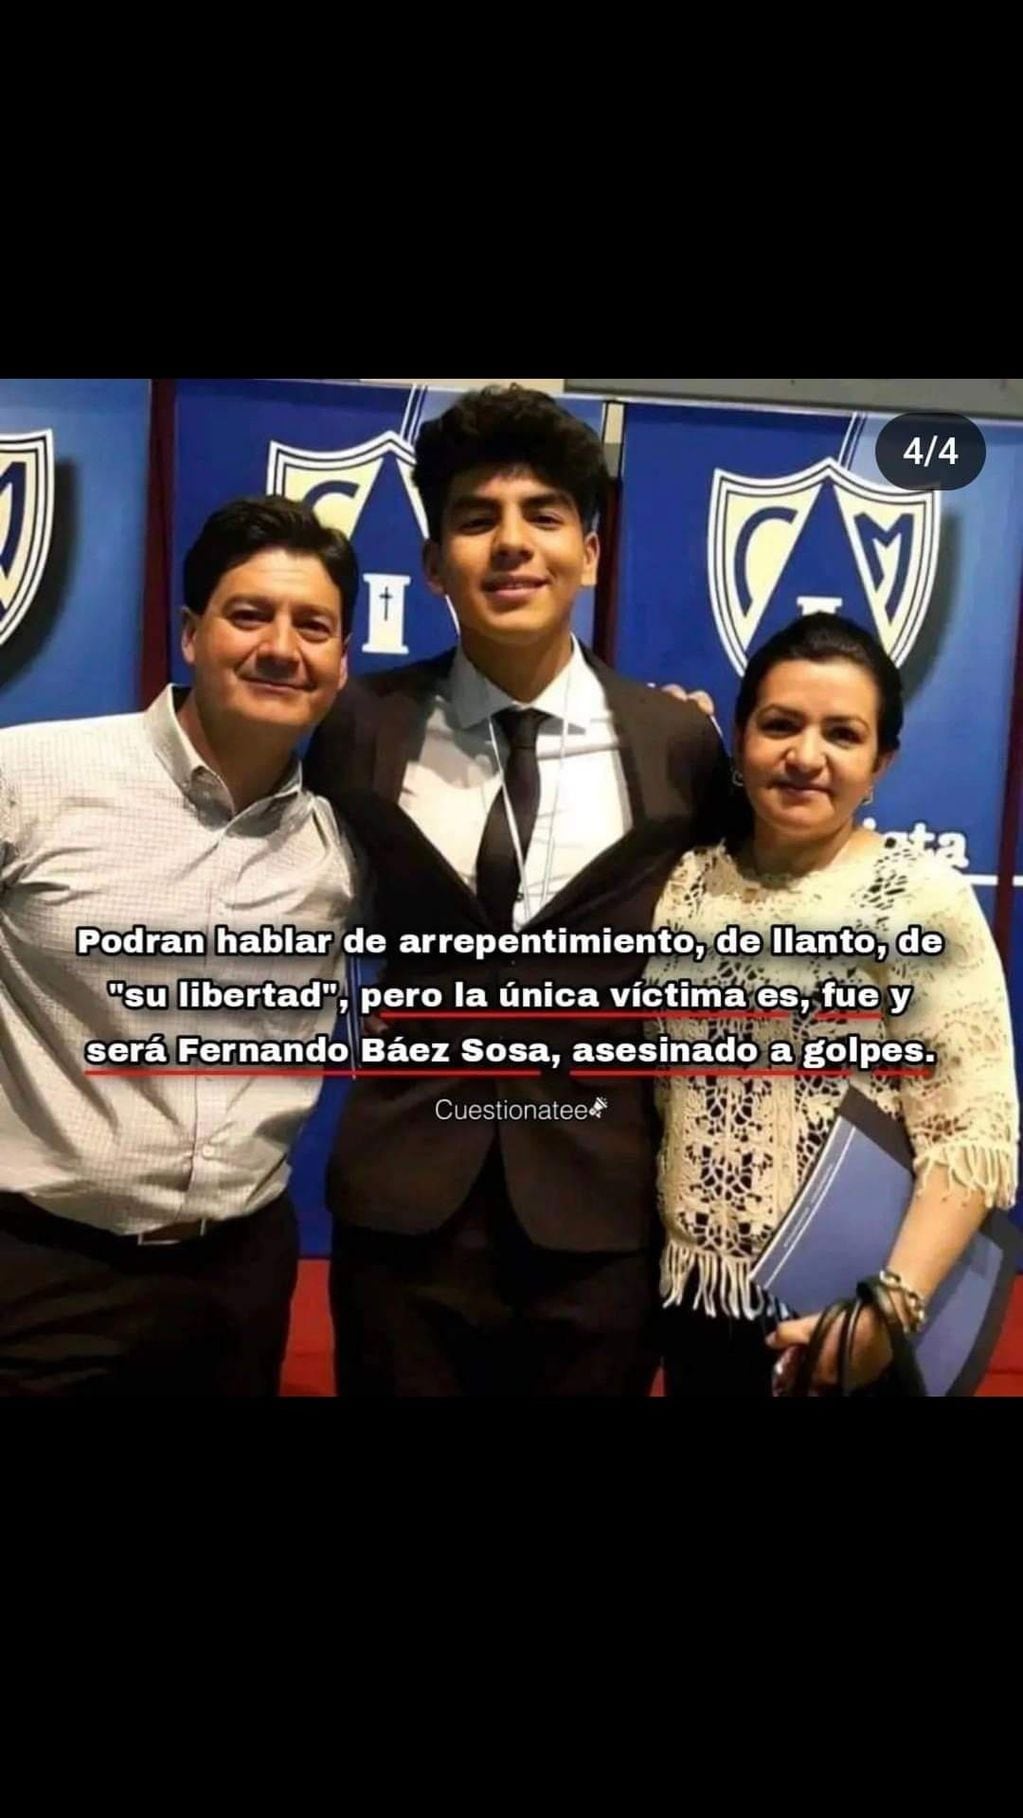 La historia que compartió en Instagram la mamá de Fernando: "La única víctima es, fue y será Fernando Báez Sosa, asesinado a golpes".